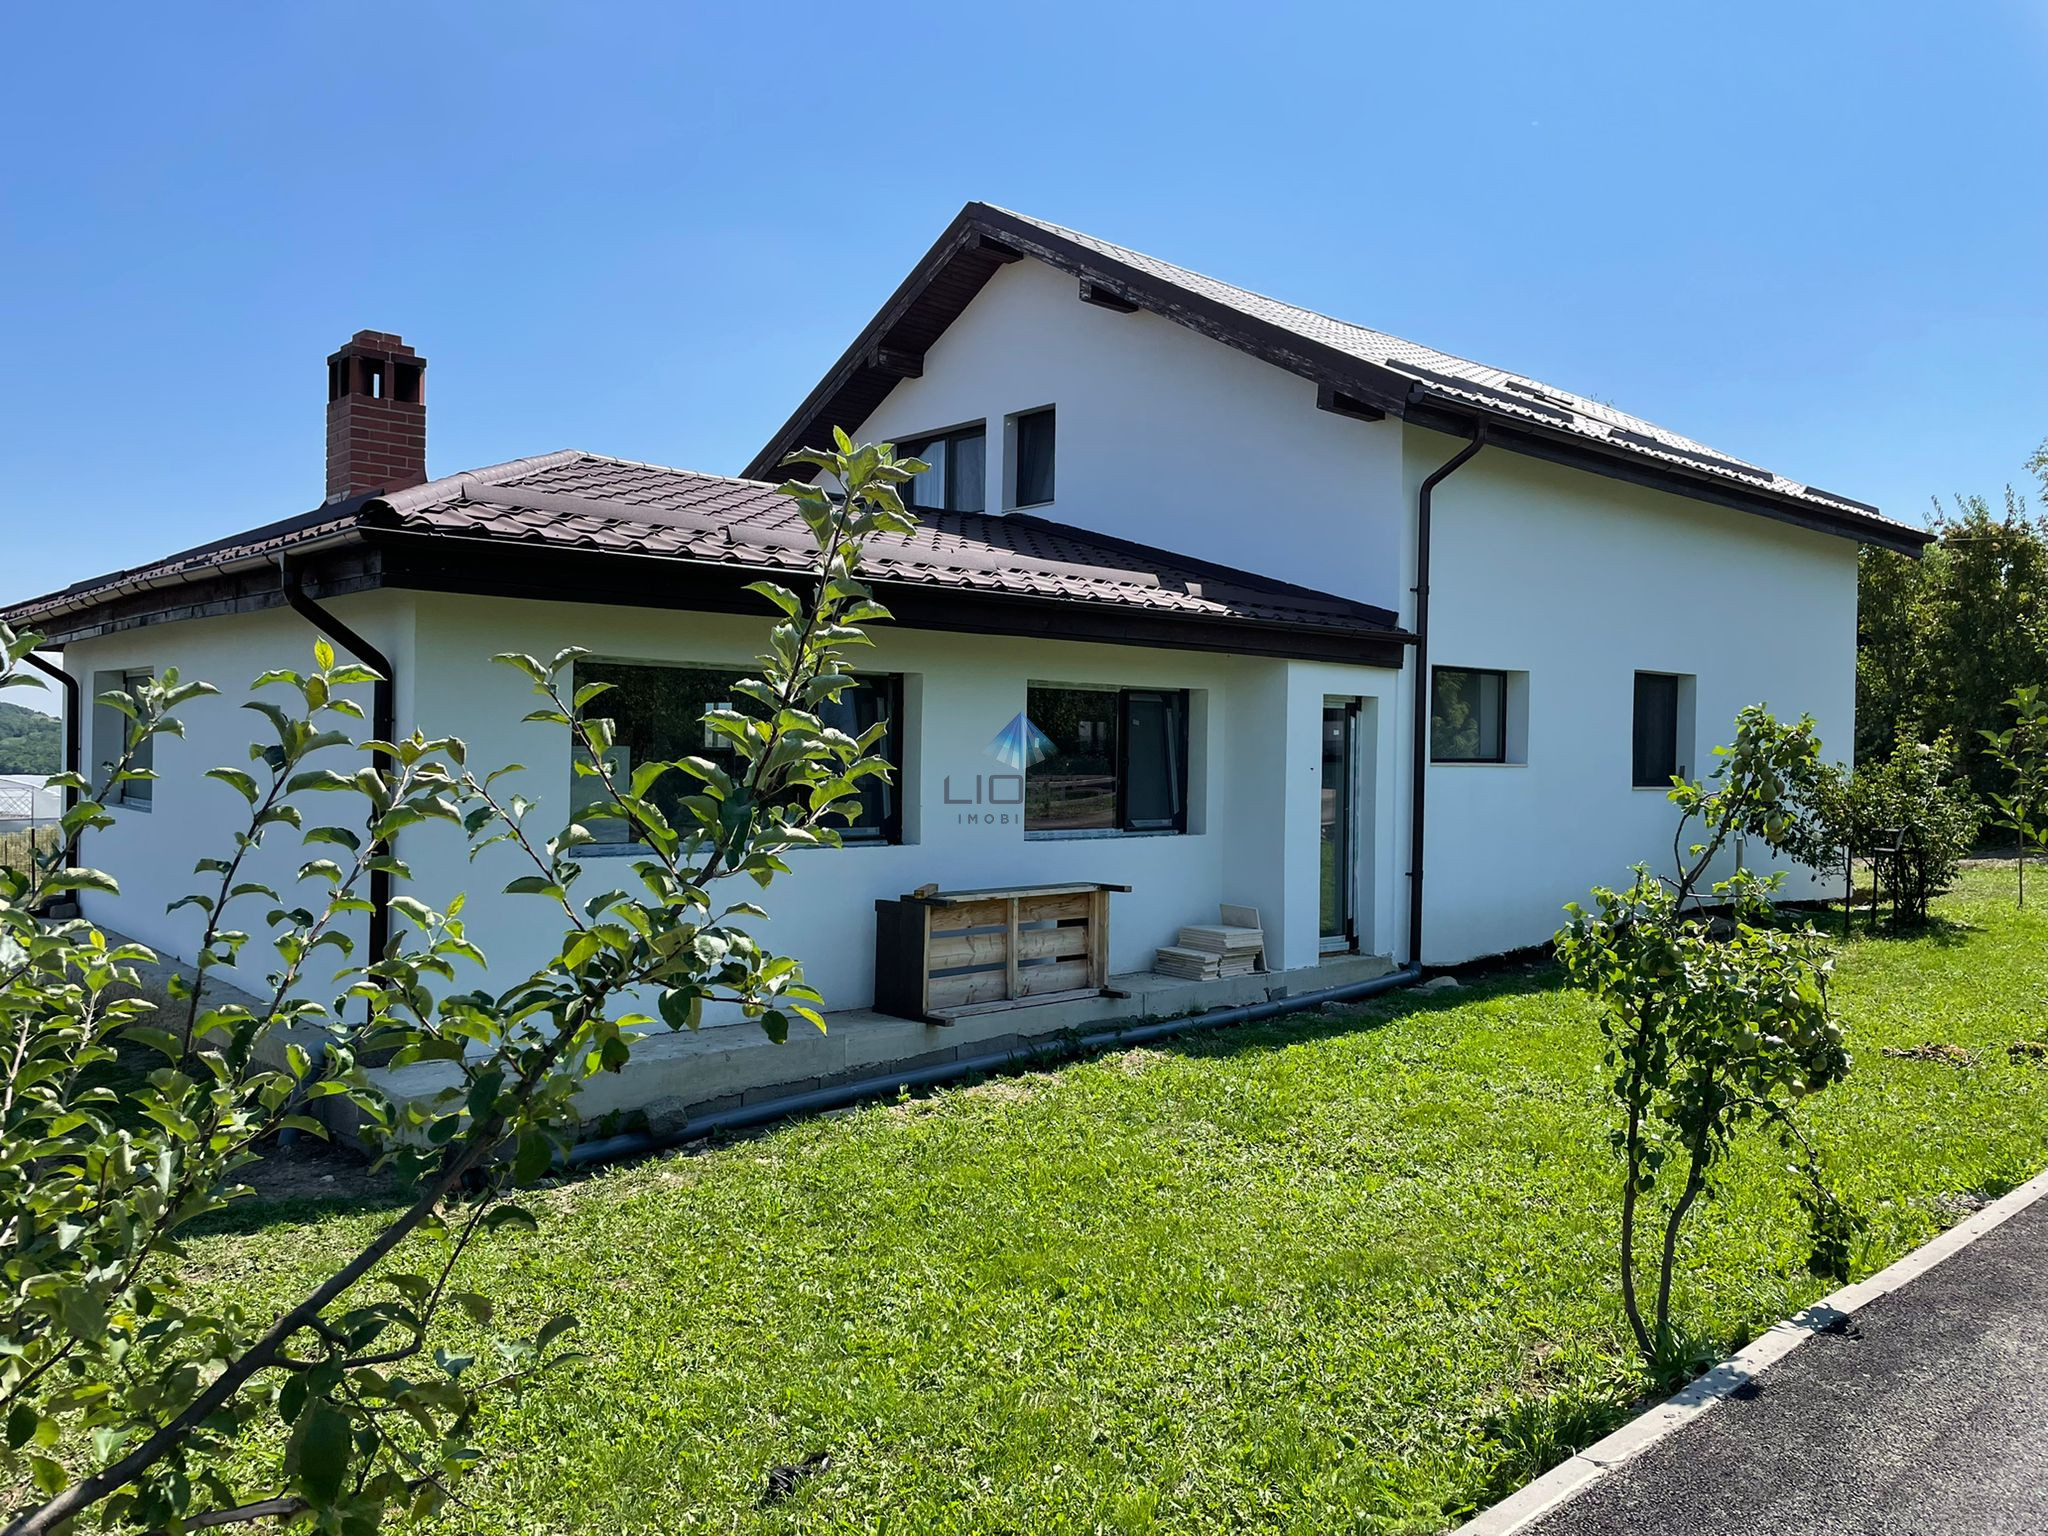 Case de vanzare Cluj 